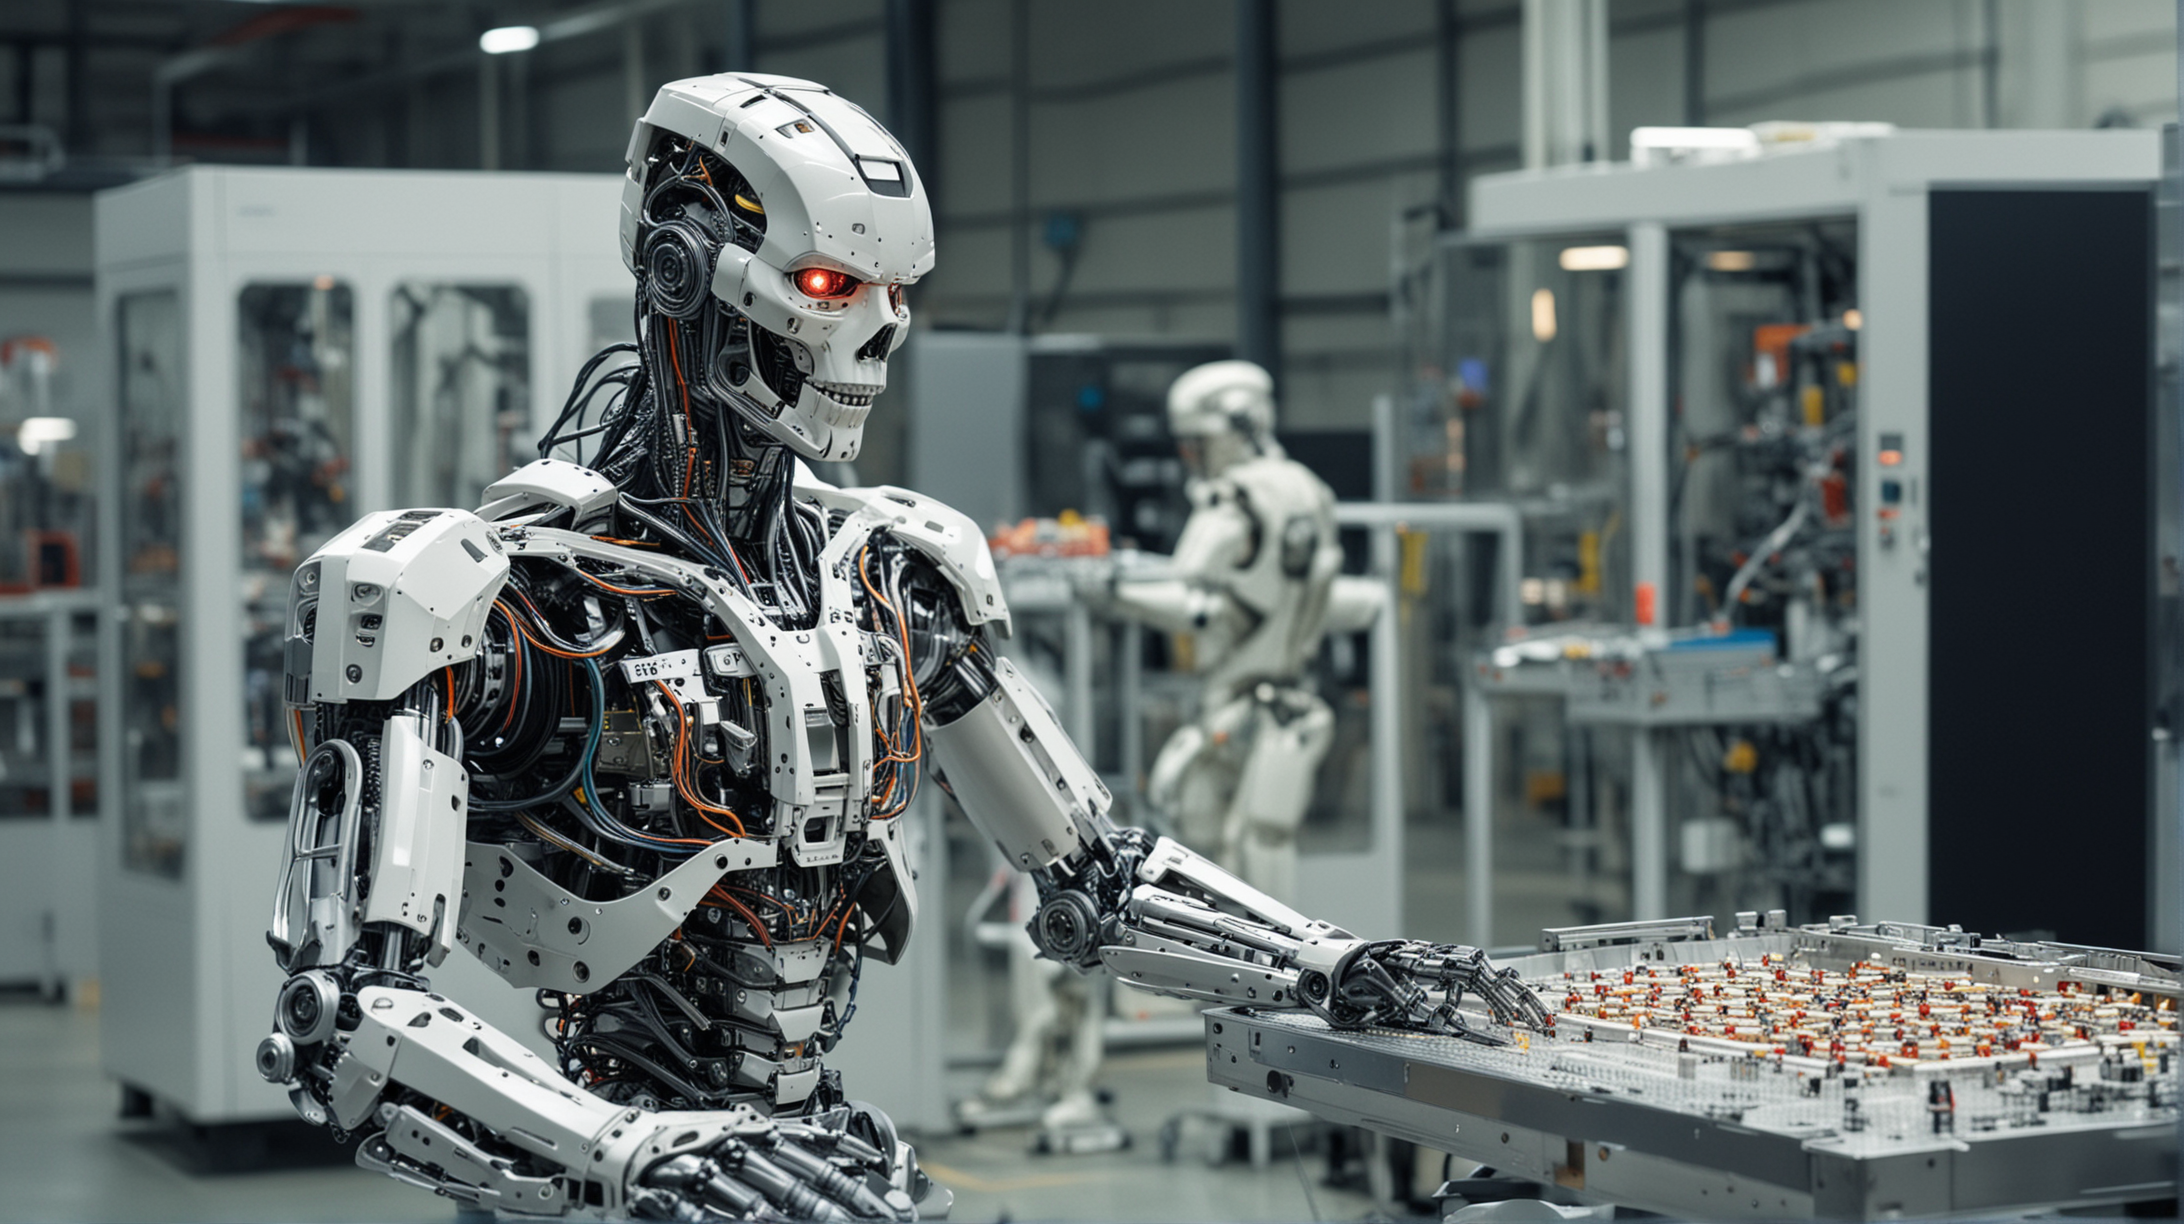 robot terminator, in factory, chip making machne, Applied Materials Endura machine in background,